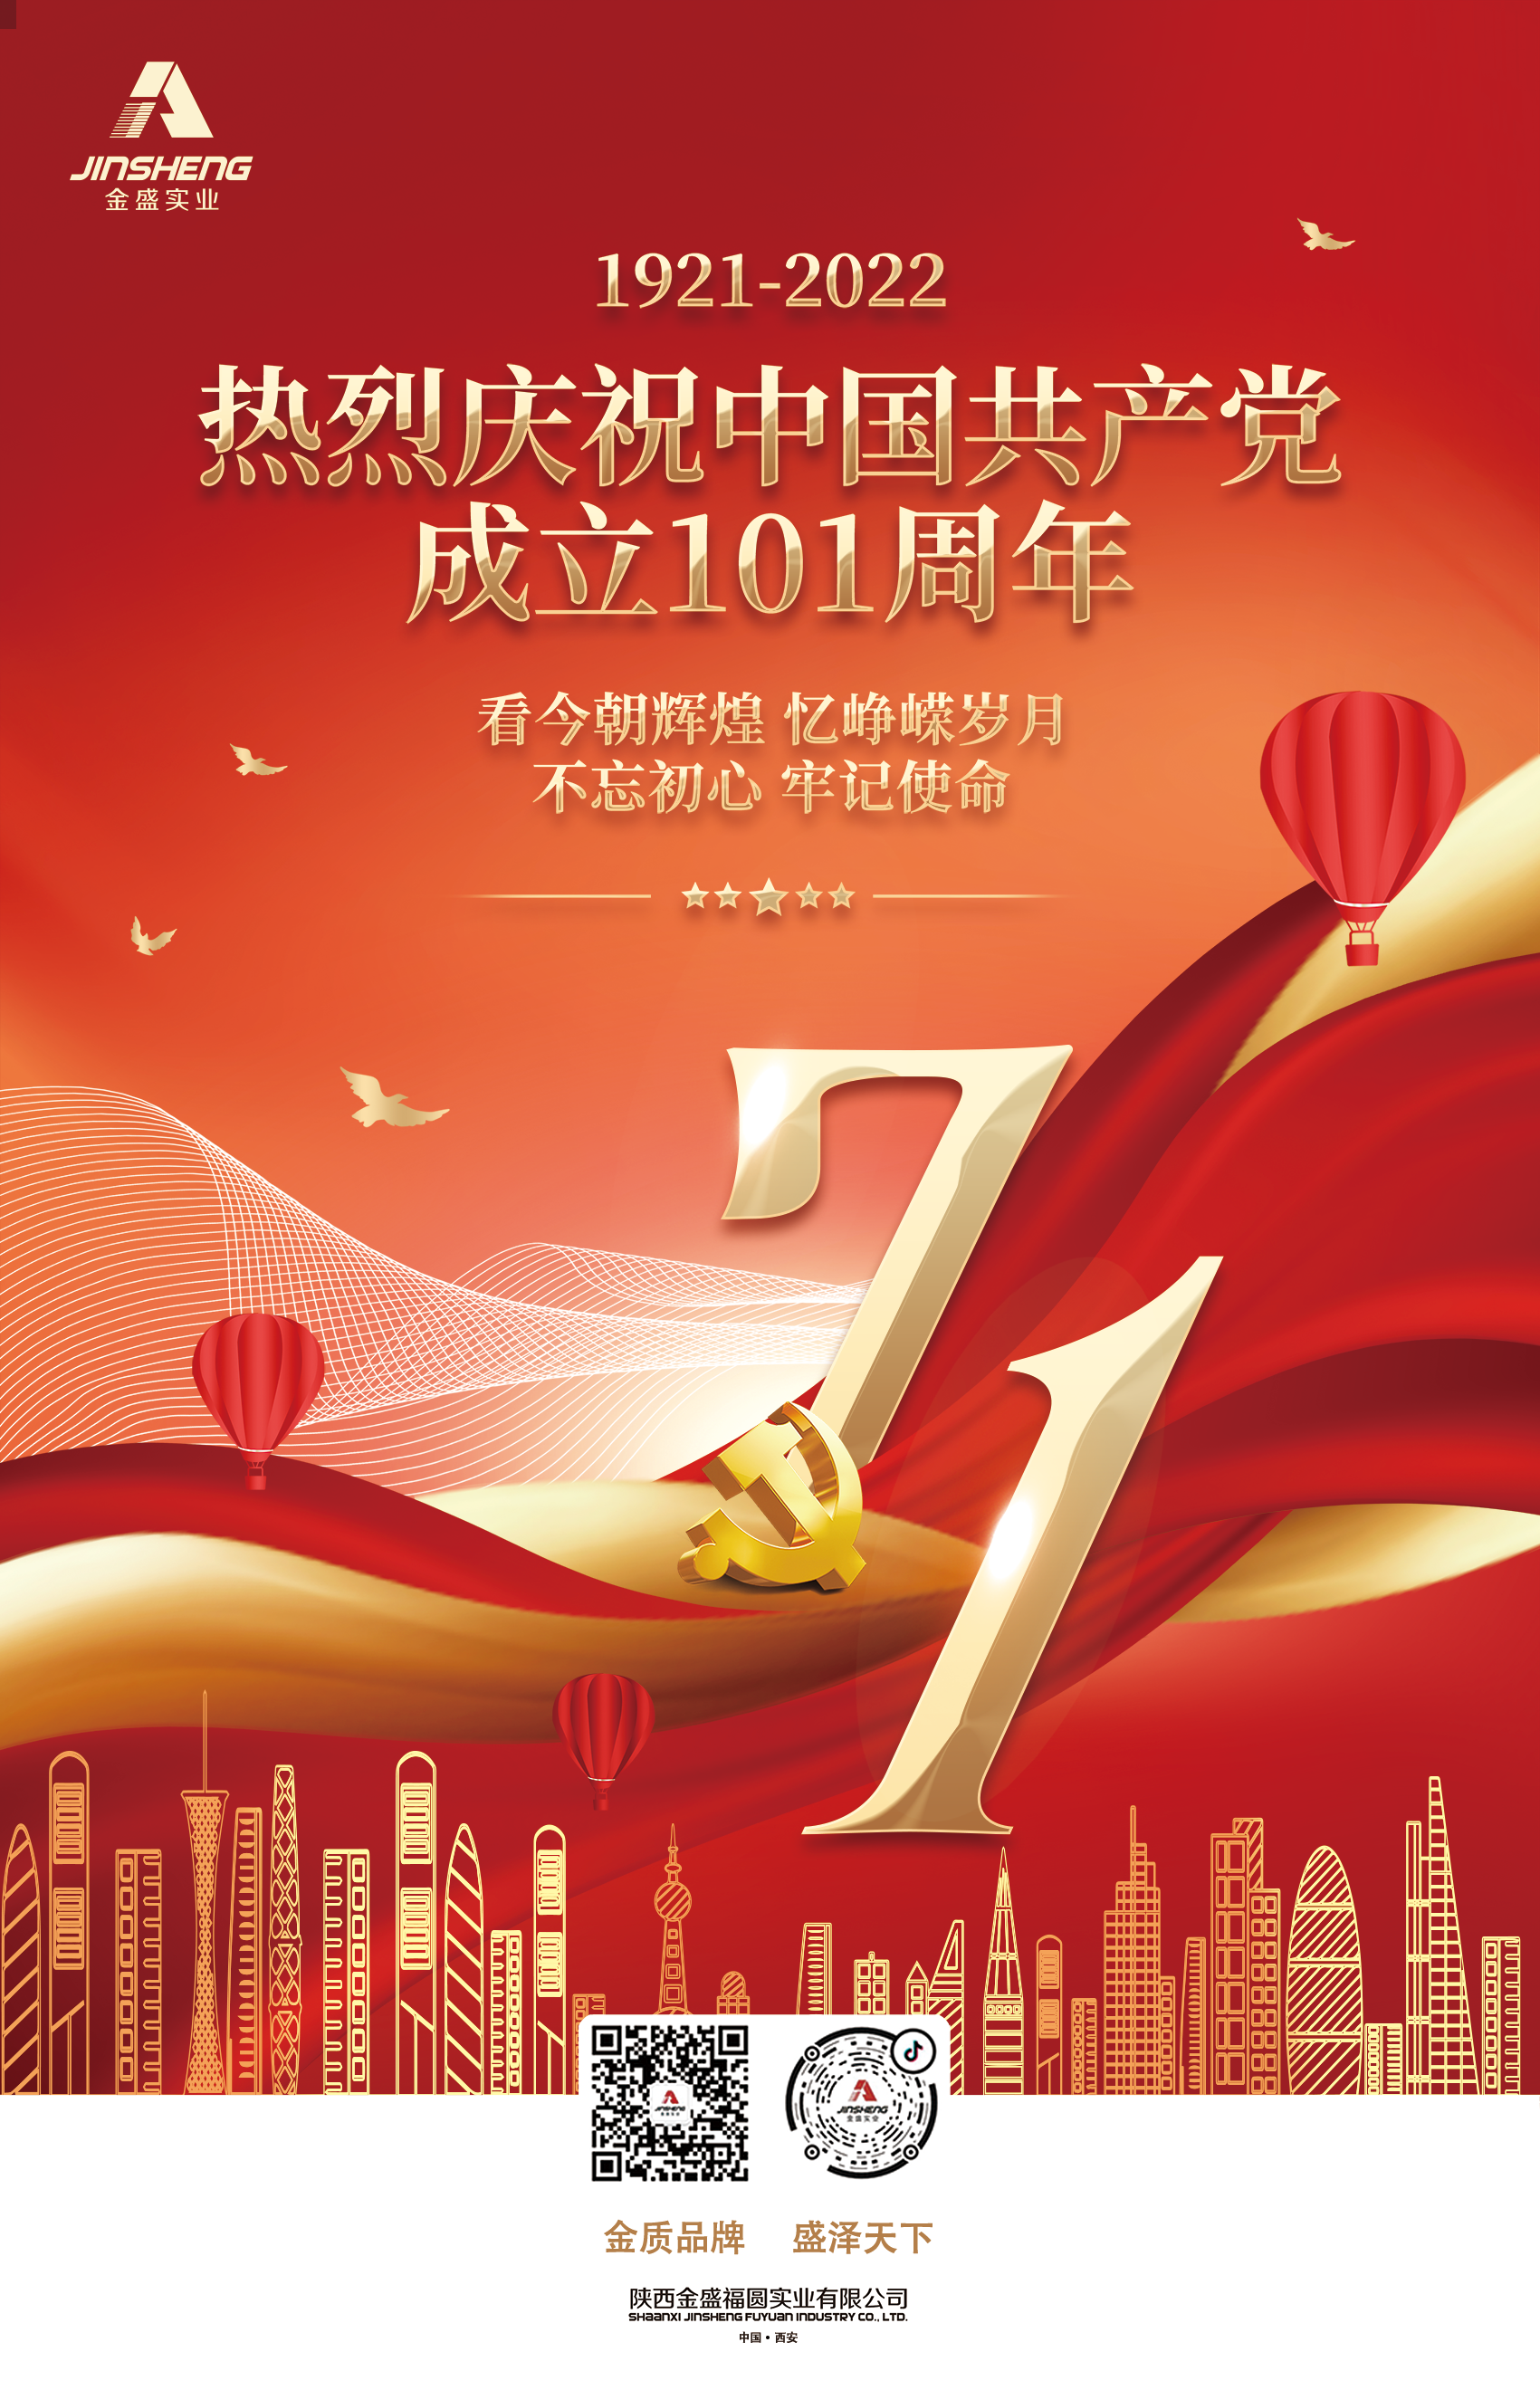 陕西金盛祝贺中国共产党成立101周年